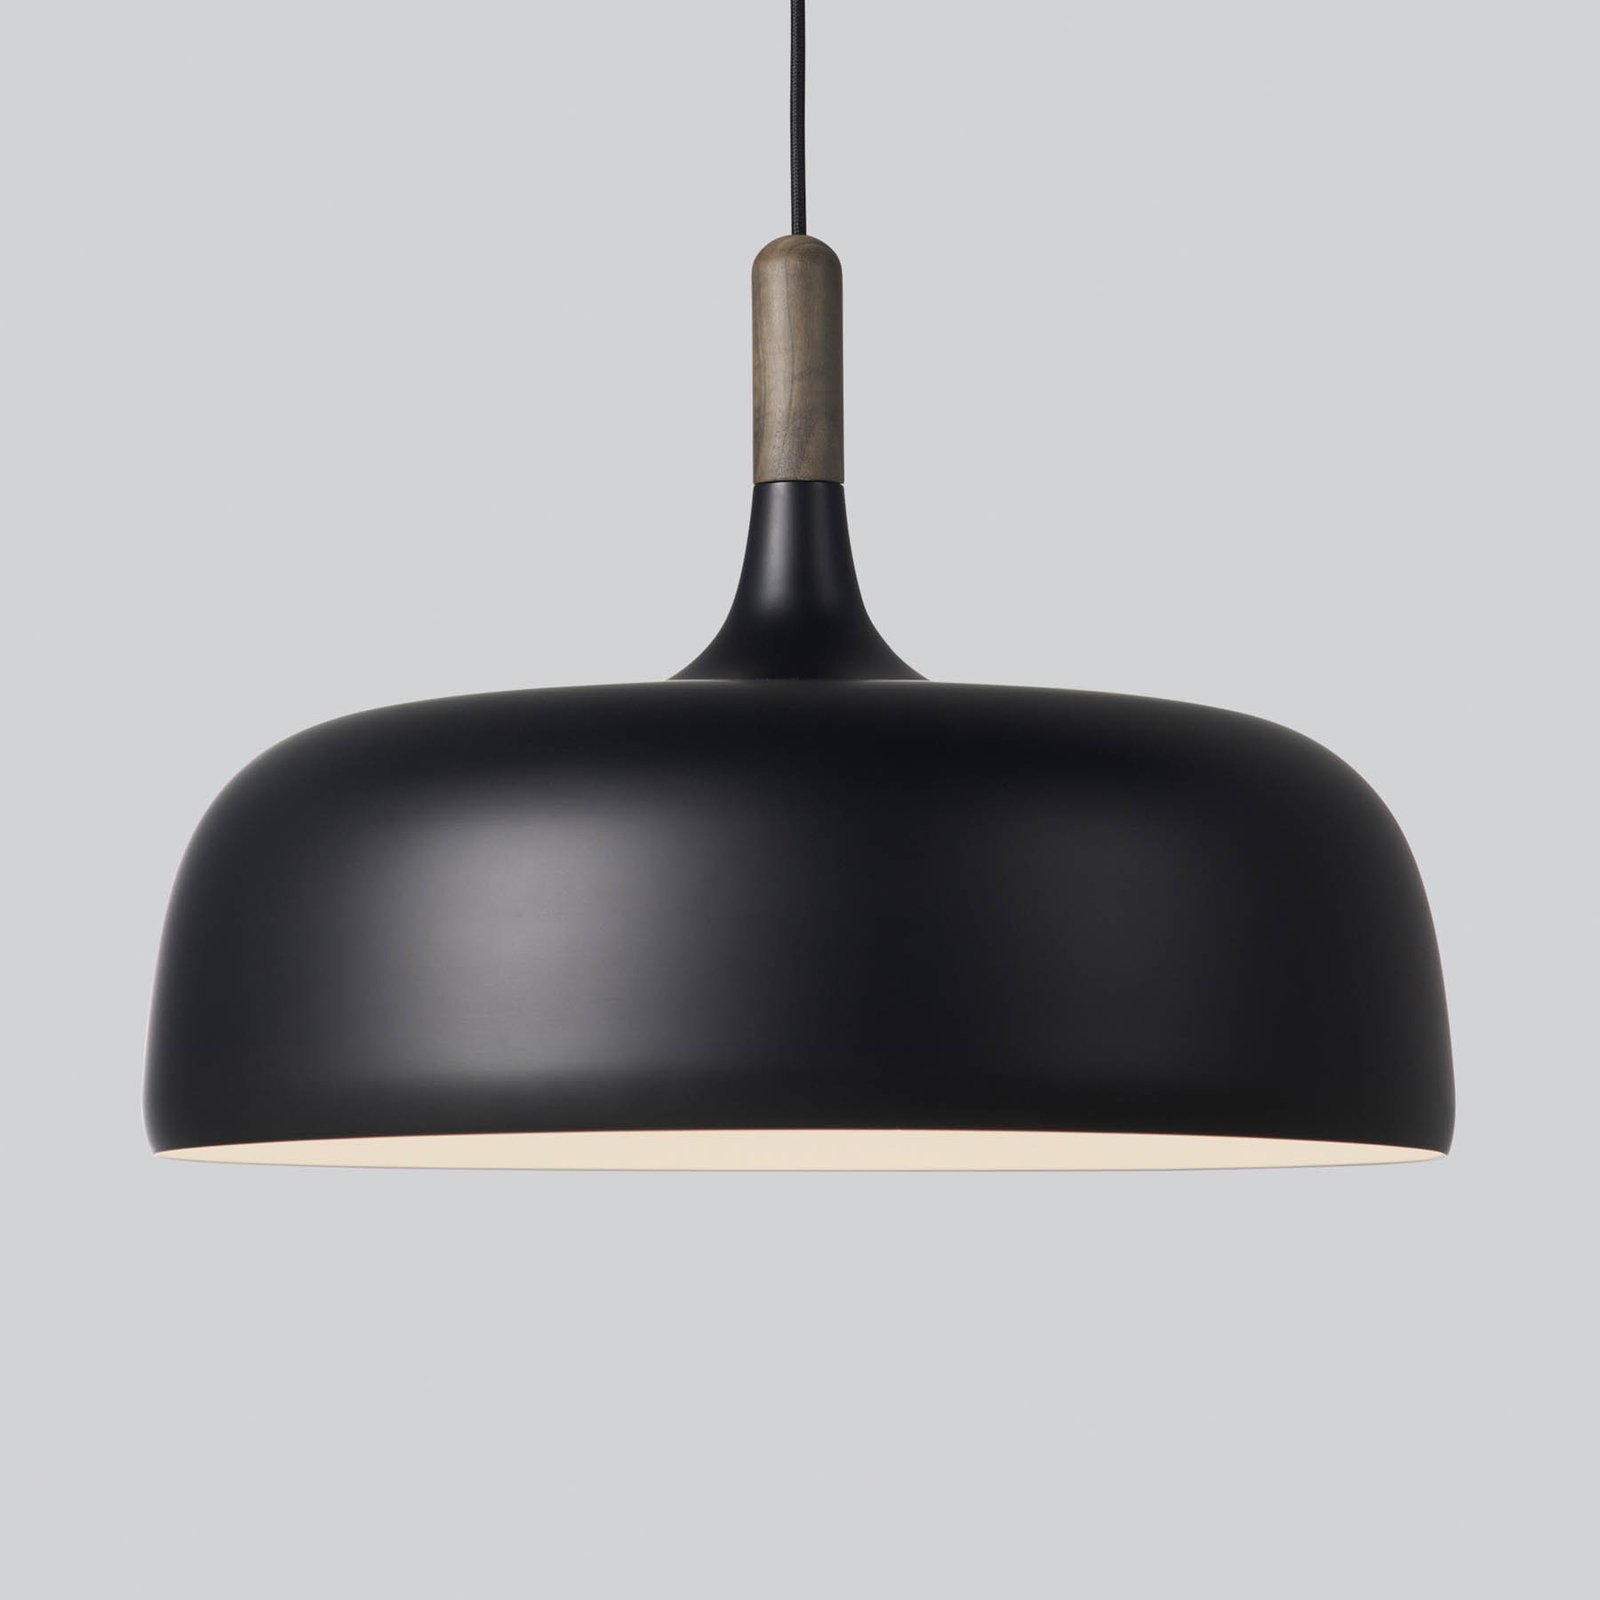 Northern Acorn hanglamp mat zwart